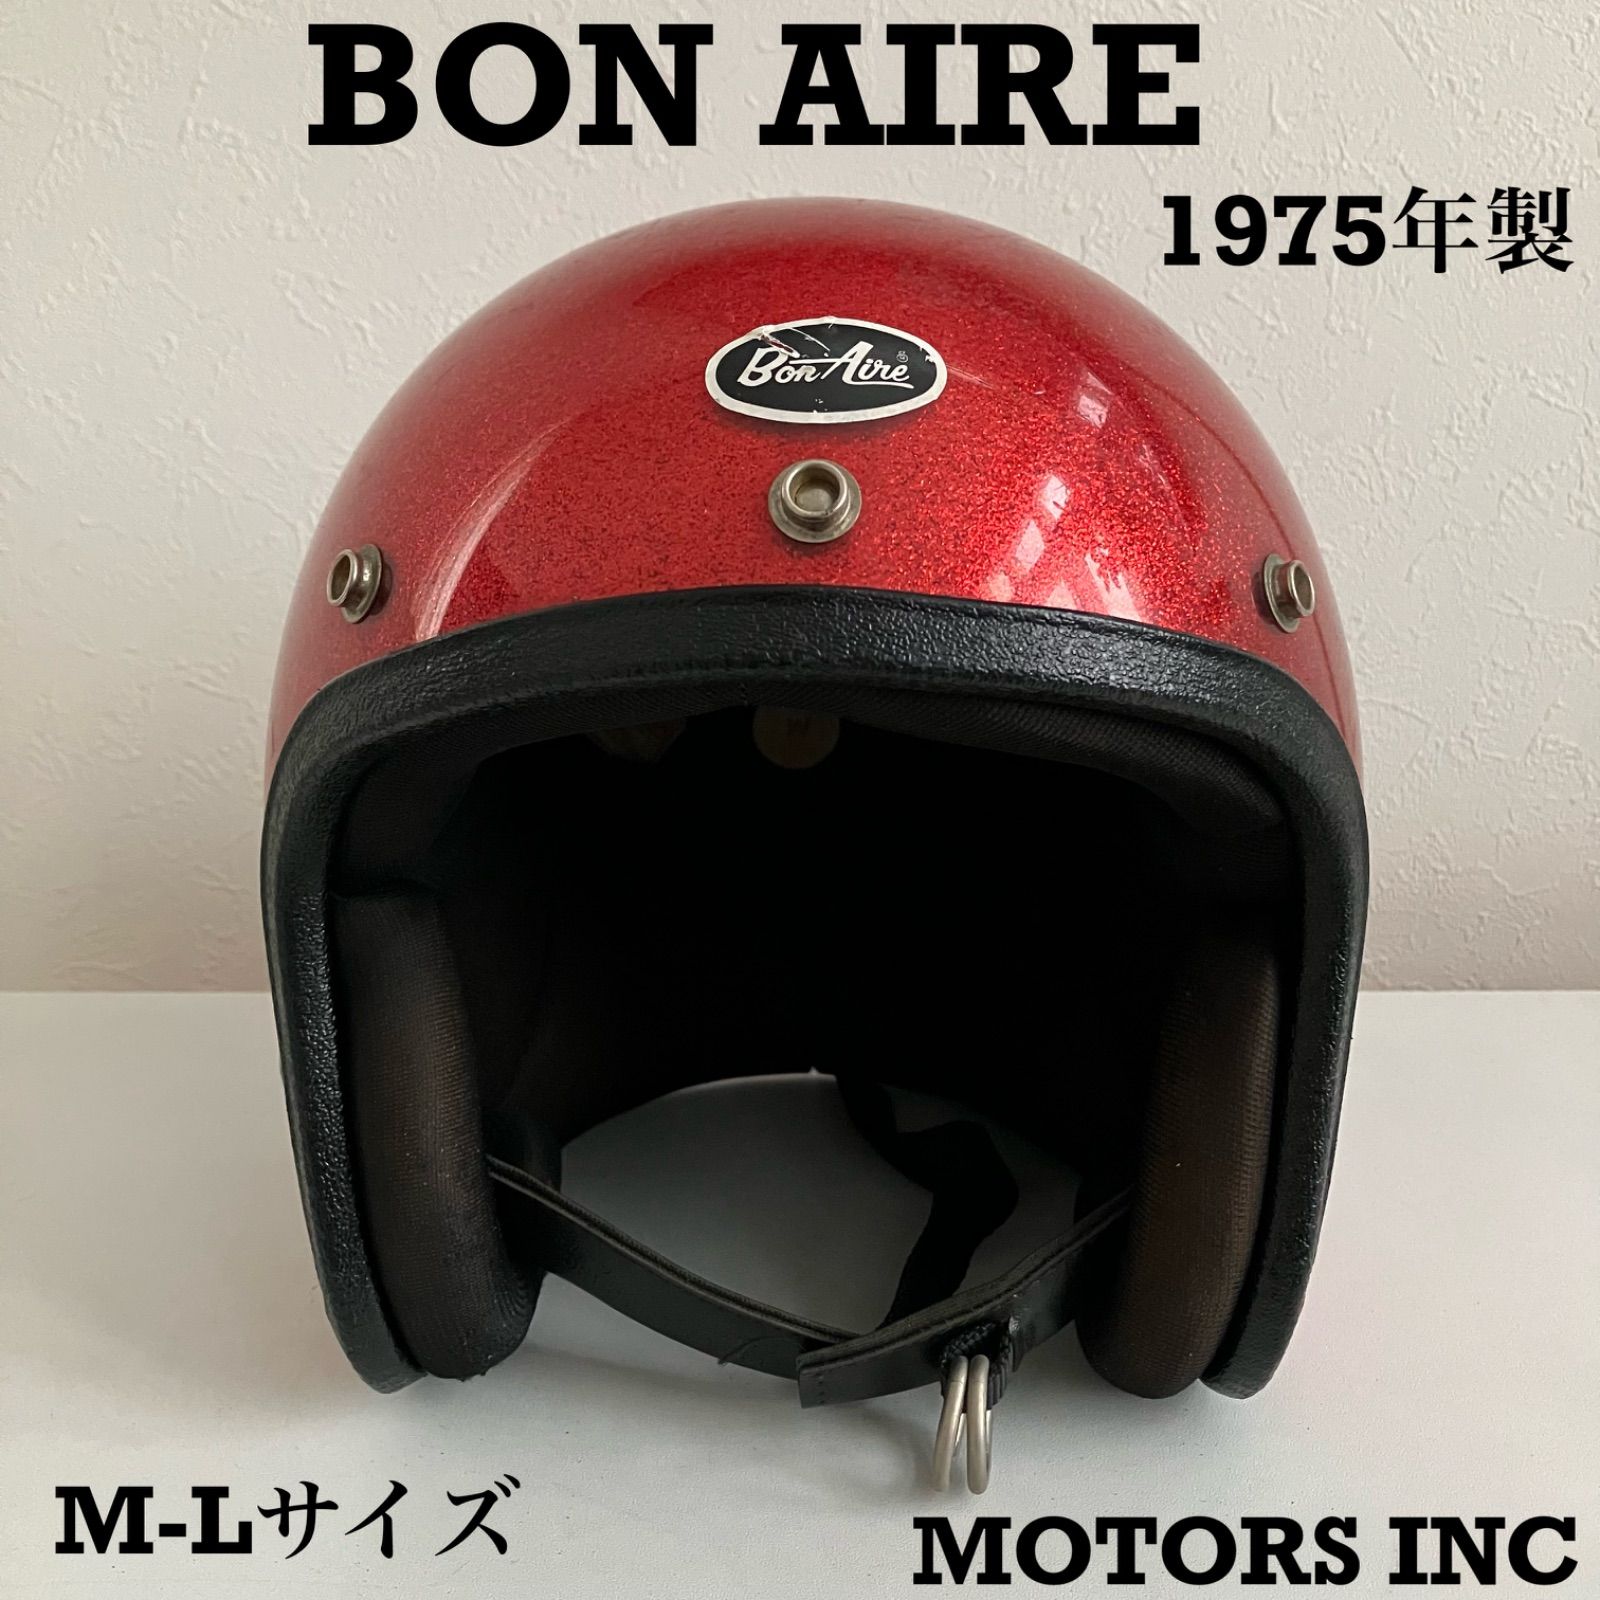 BON AIRE☆ビンテージヘルメット 1970年代 ヘルメット 赤 フレーク ...